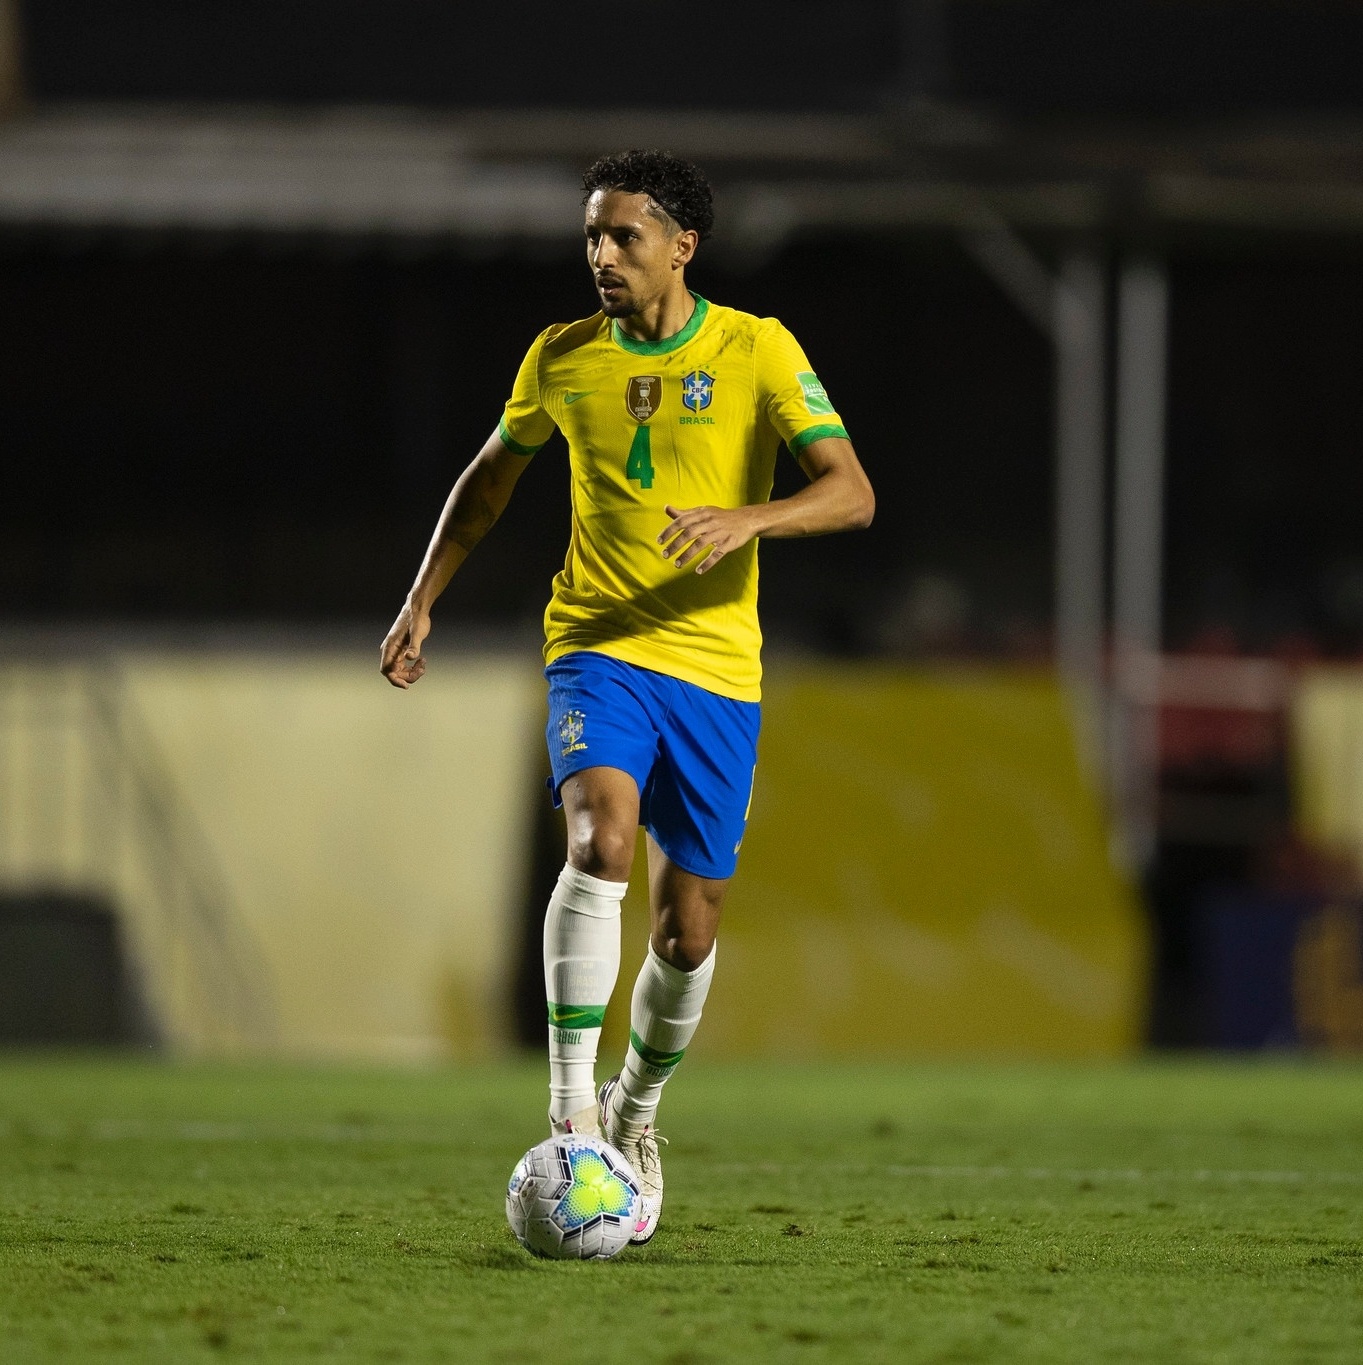 Reforço mais caro da história do City diz se inspirar em Neymar